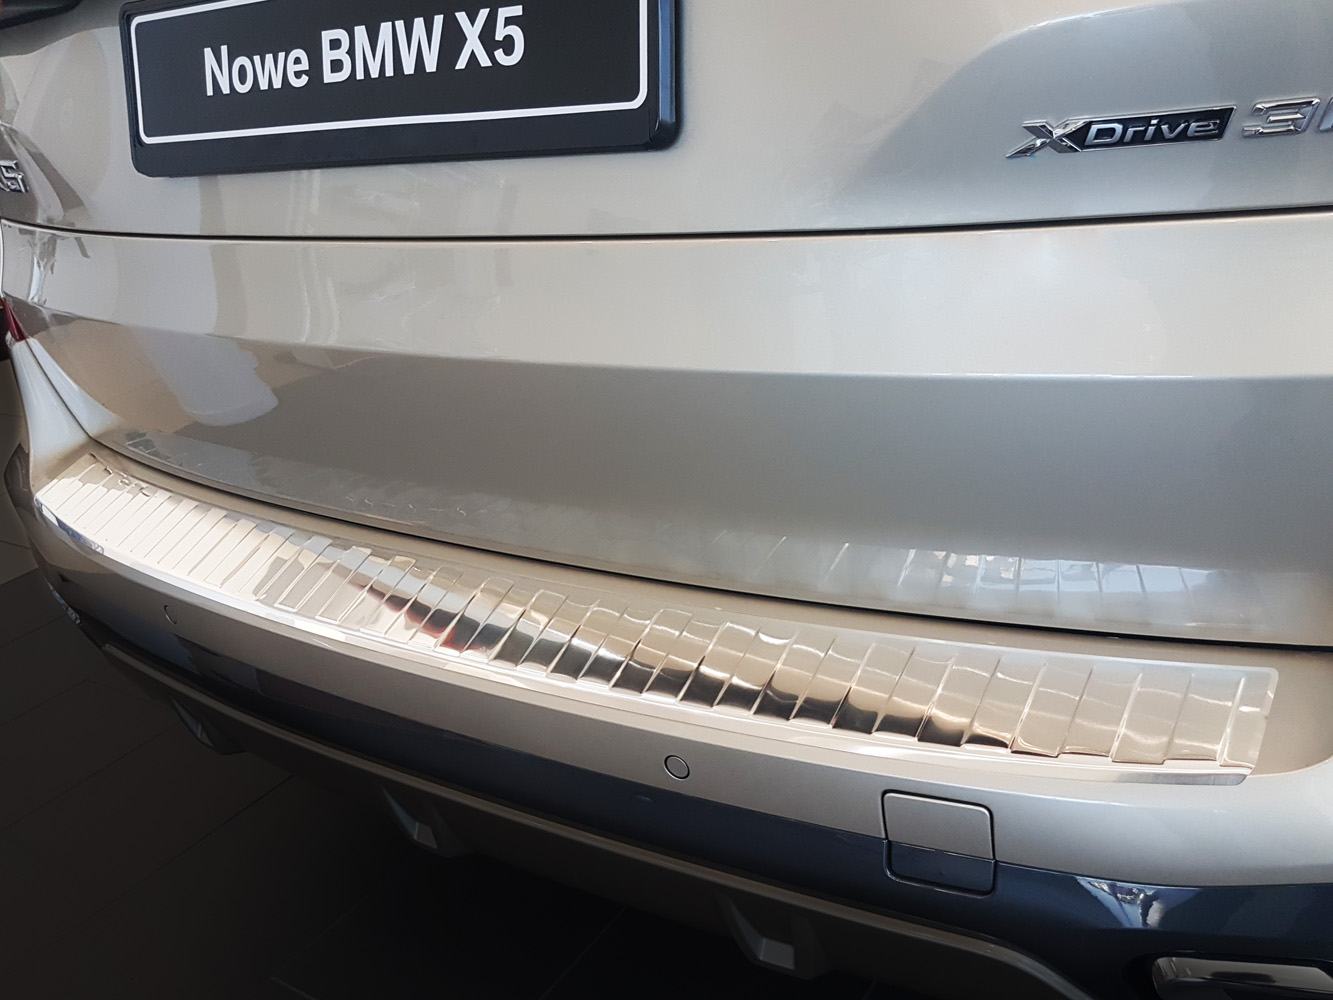 Ladekantenschutz für BMW X5 - Schutz für die Ladekante Ihres Fahrzeuges